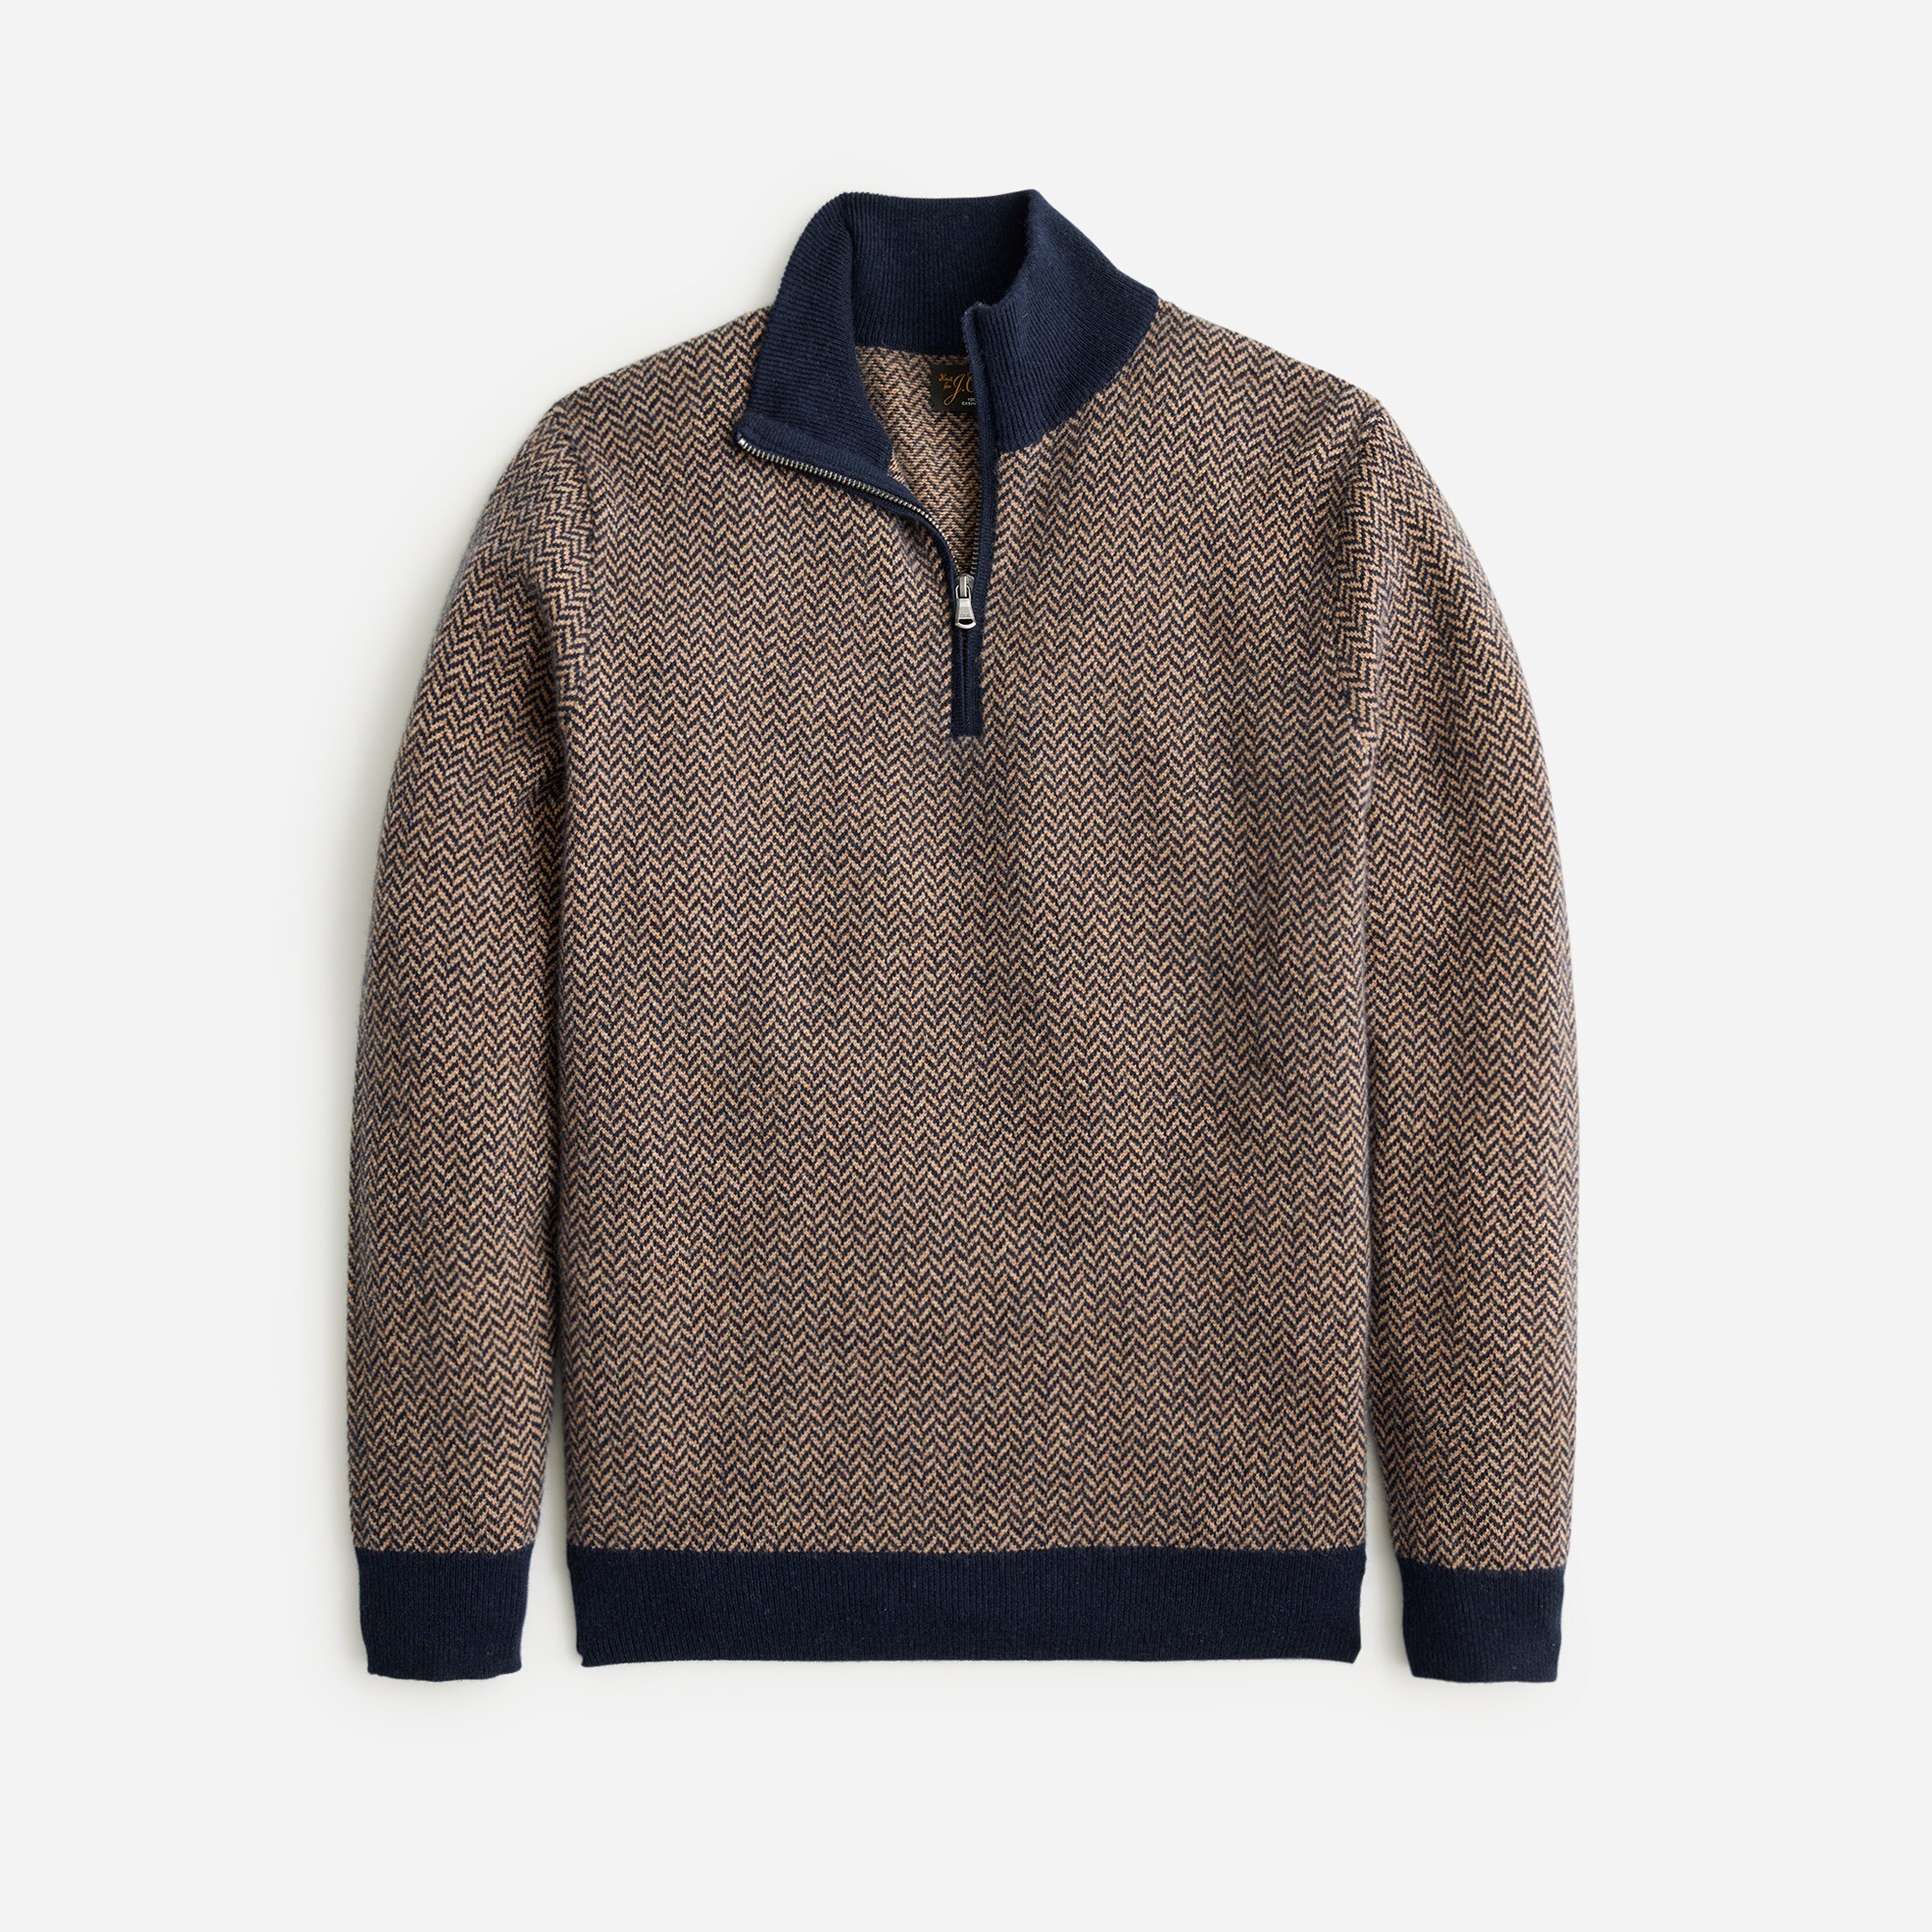  Cashmere half-zip sweater in herringbone jacquard